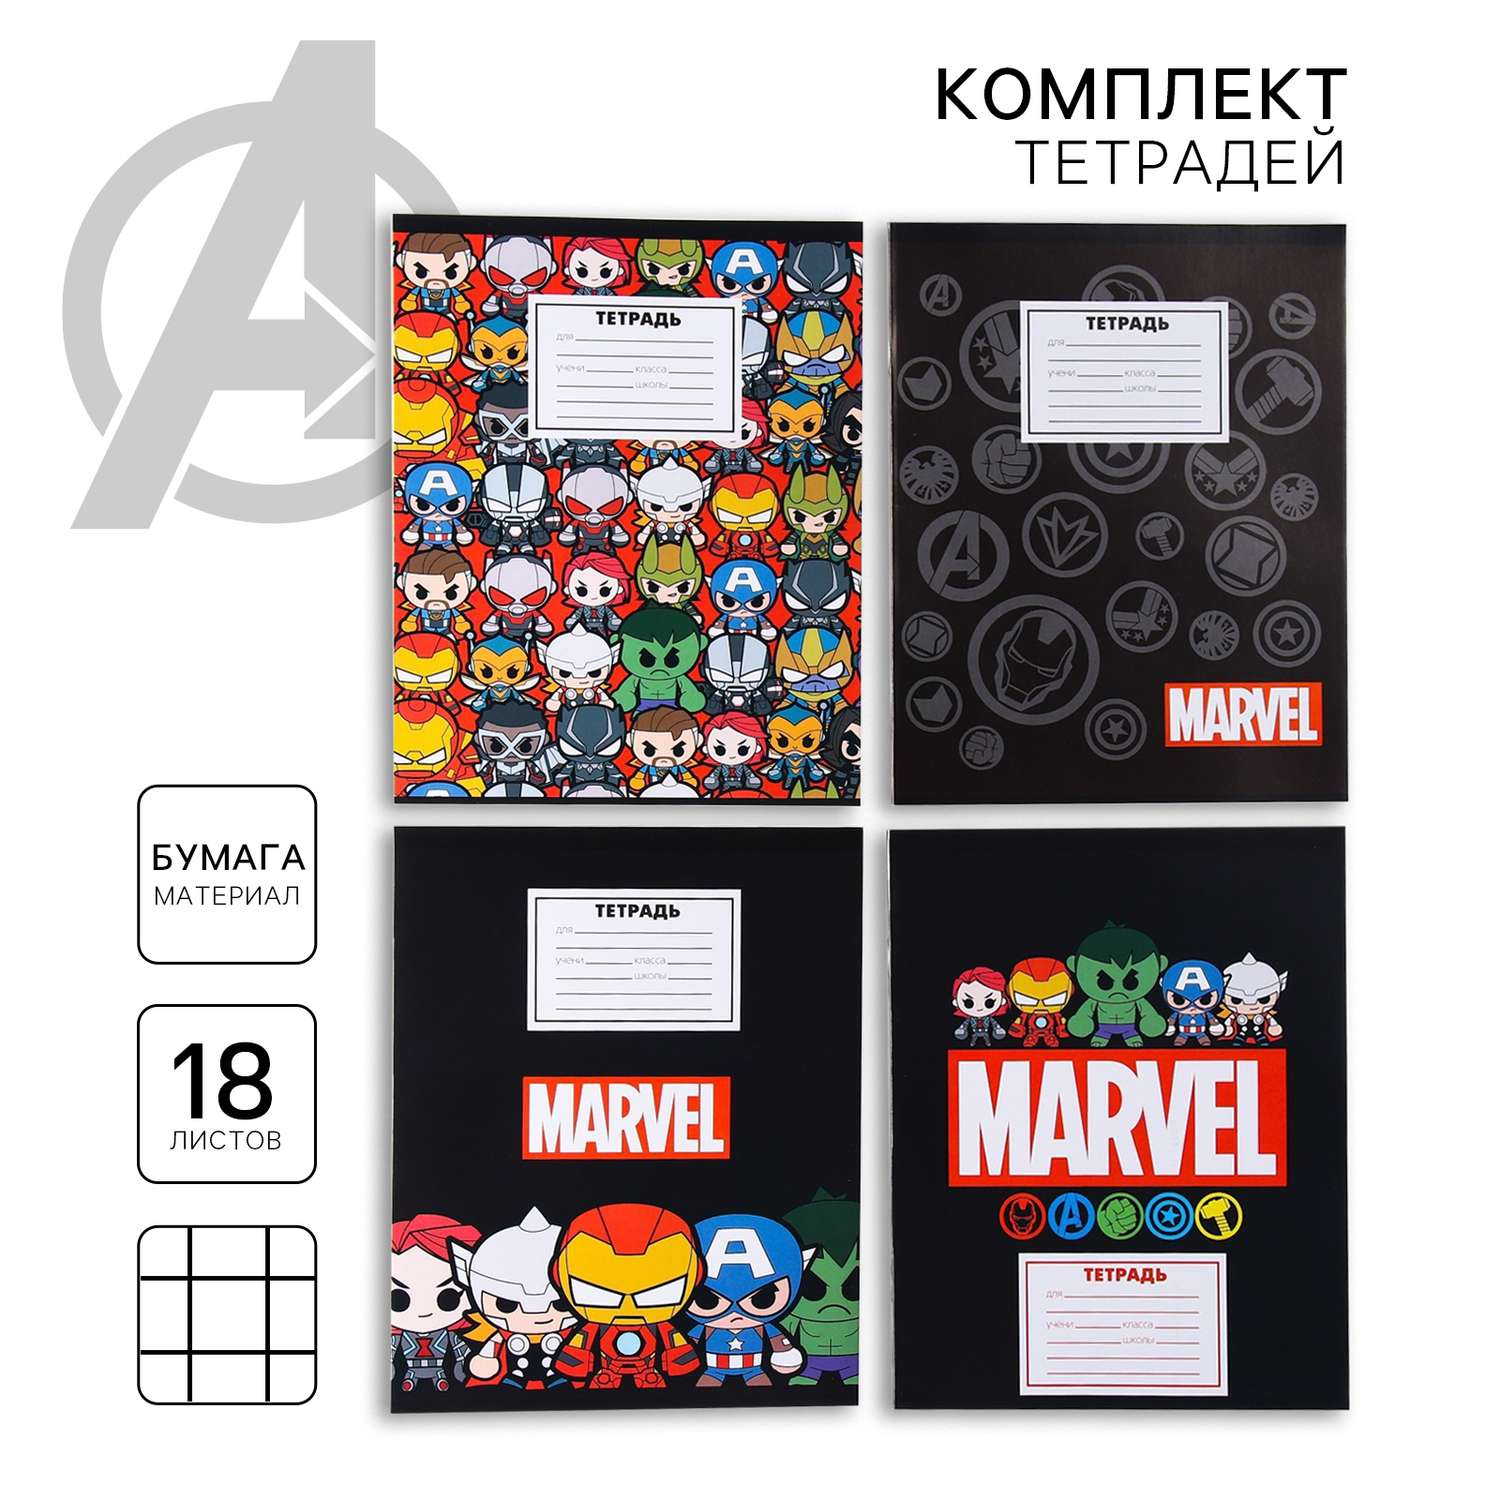 Комплект тетрадей Marvel из 20 шт «Мстители» 18 листов в клет обложка бум.мелов. - фото 1